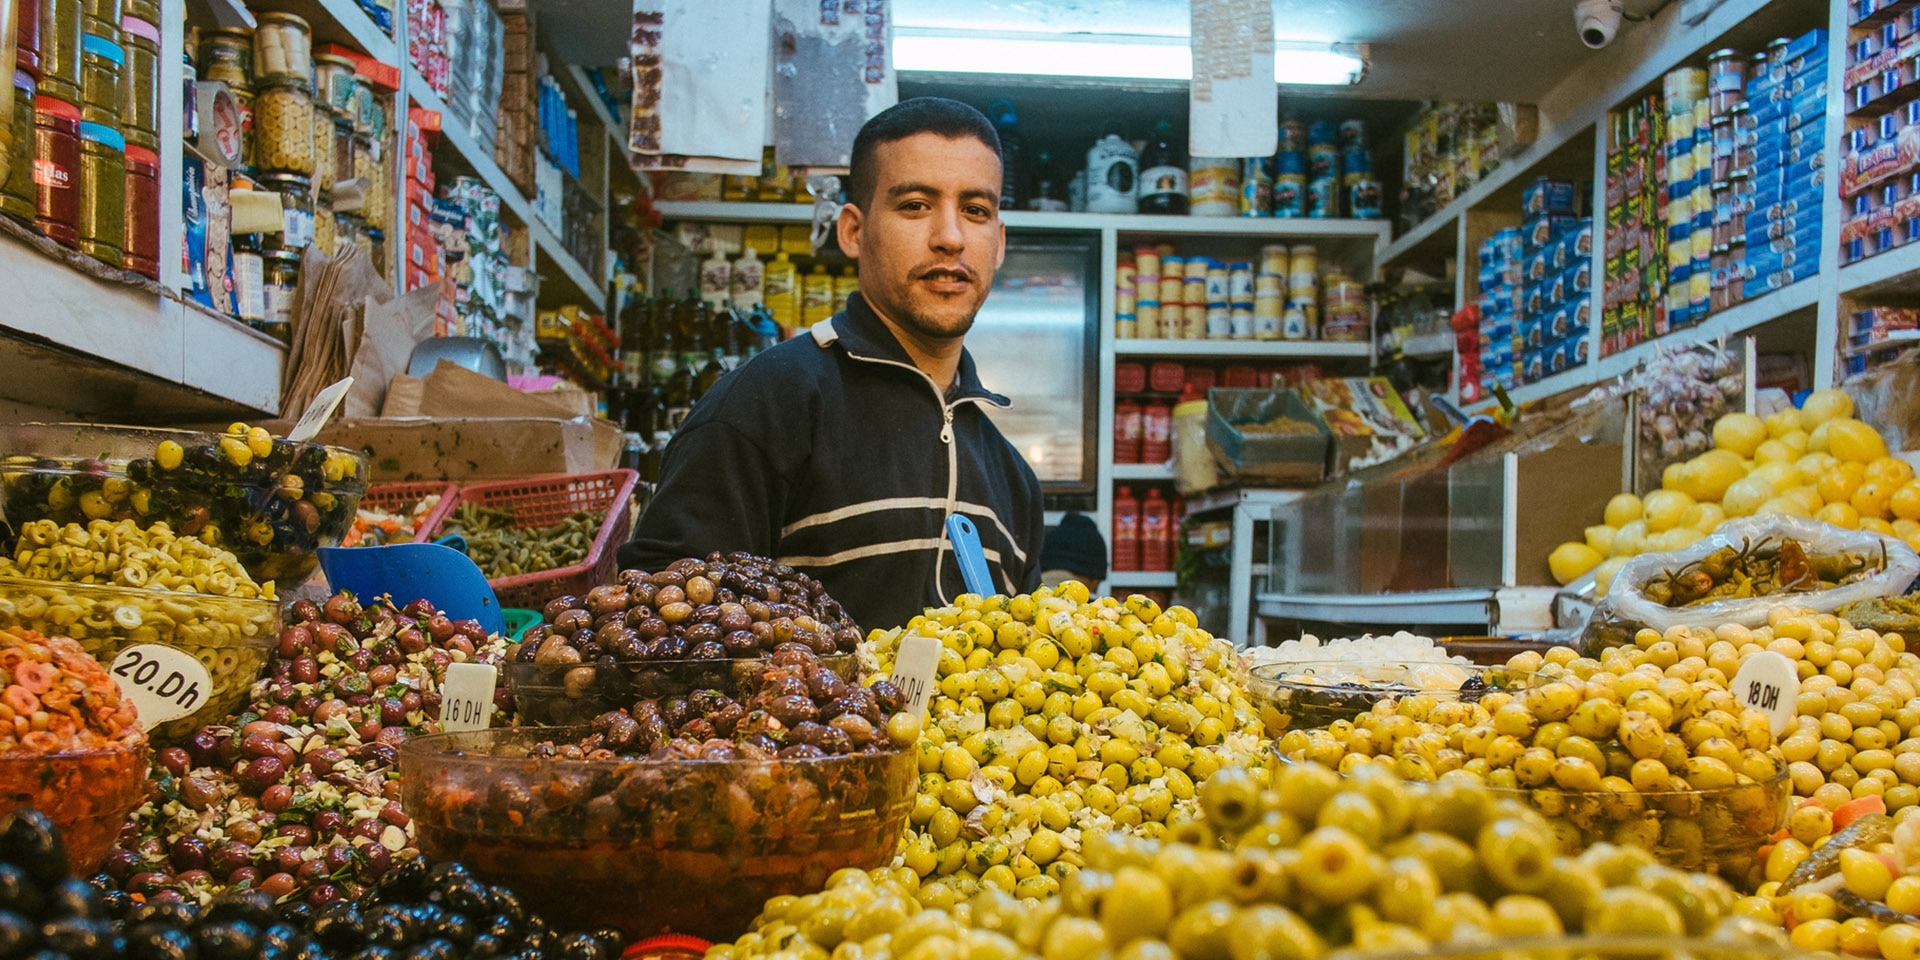 Un commerçant apparaît dans une échoppe remplie d’une large sélection d’olives en tous genres.